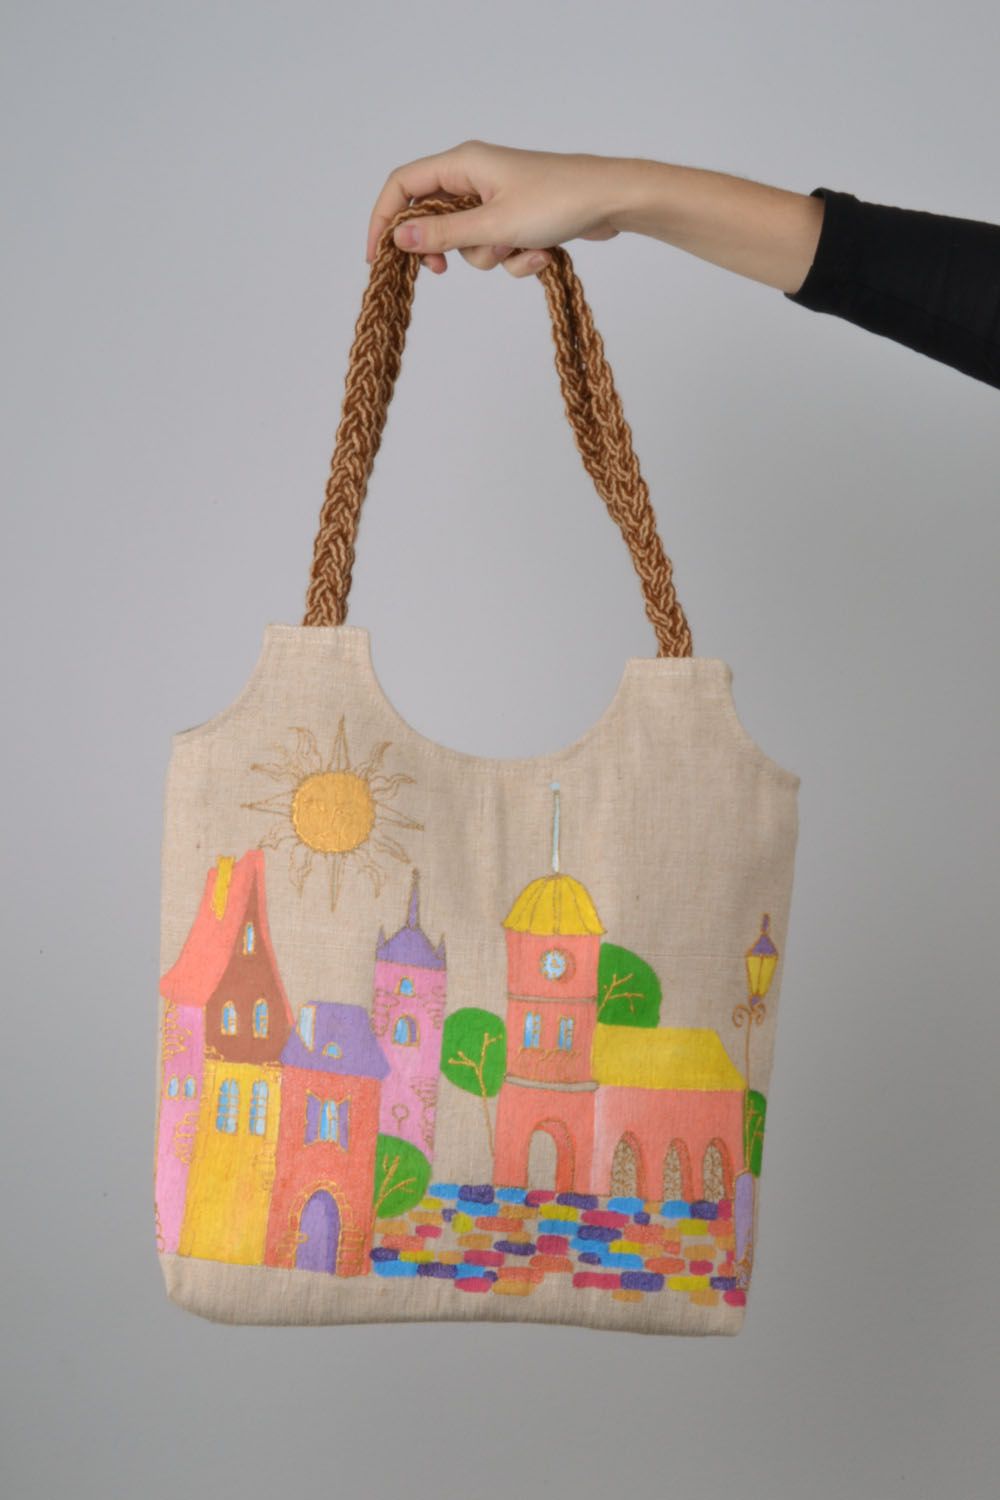 Текстильная сумка в эко-стиле фото 2